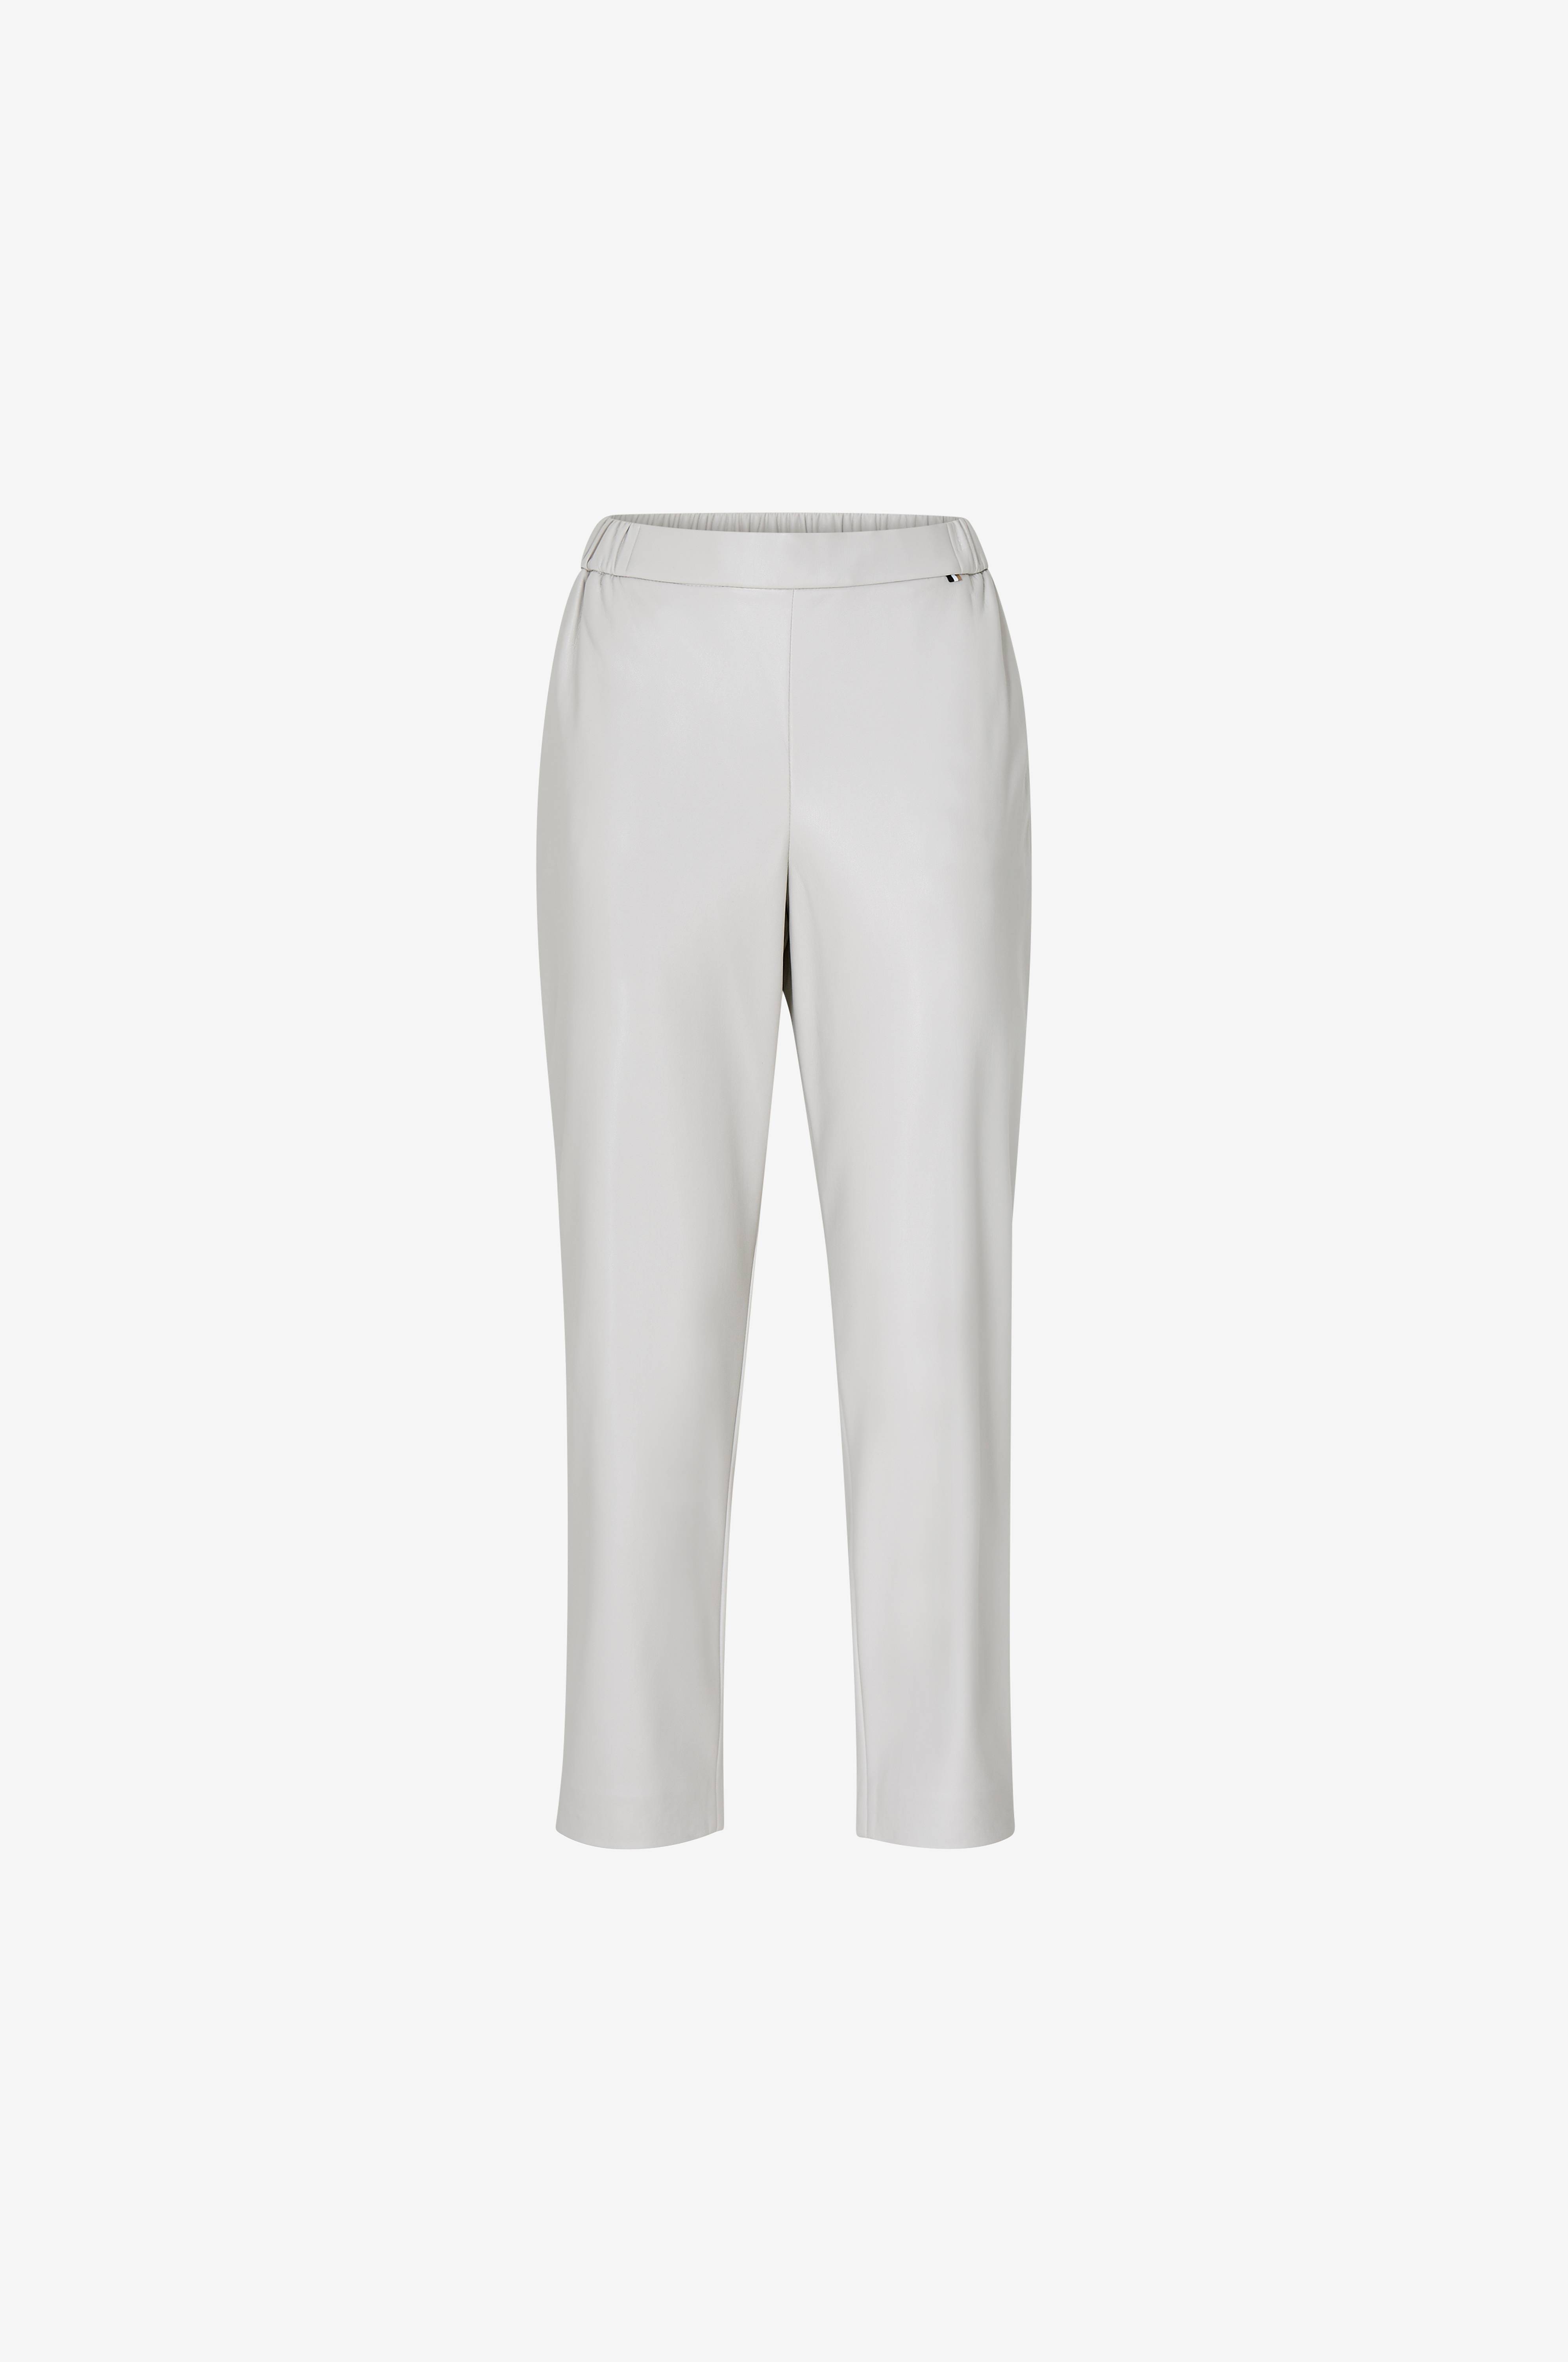 Damebukser med lige ben - Find dine nye bukser med ben - Ellos.dk